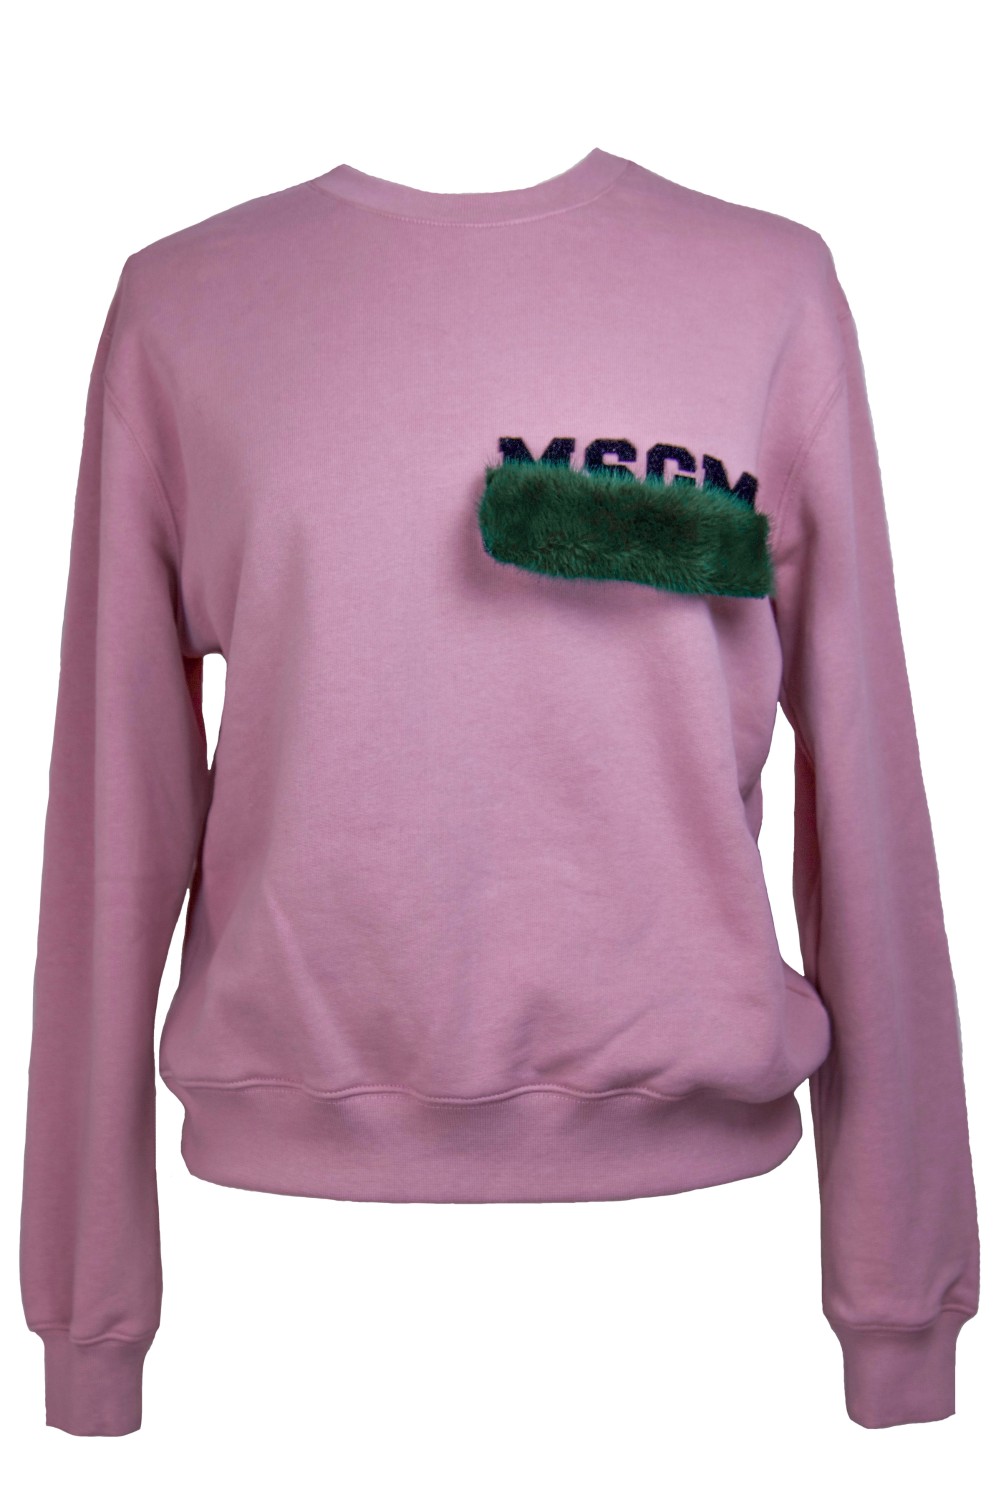 shop MSGM Saldi Felpe: Felpa MSGM in cotone, rosa, con scritta MSGM nera laterale in velcro, rettangolo in pelliccia di visone verde che si attacca e stacca su logo MSGM.

Composizione: 100% cotone e 100% visone
 number 801